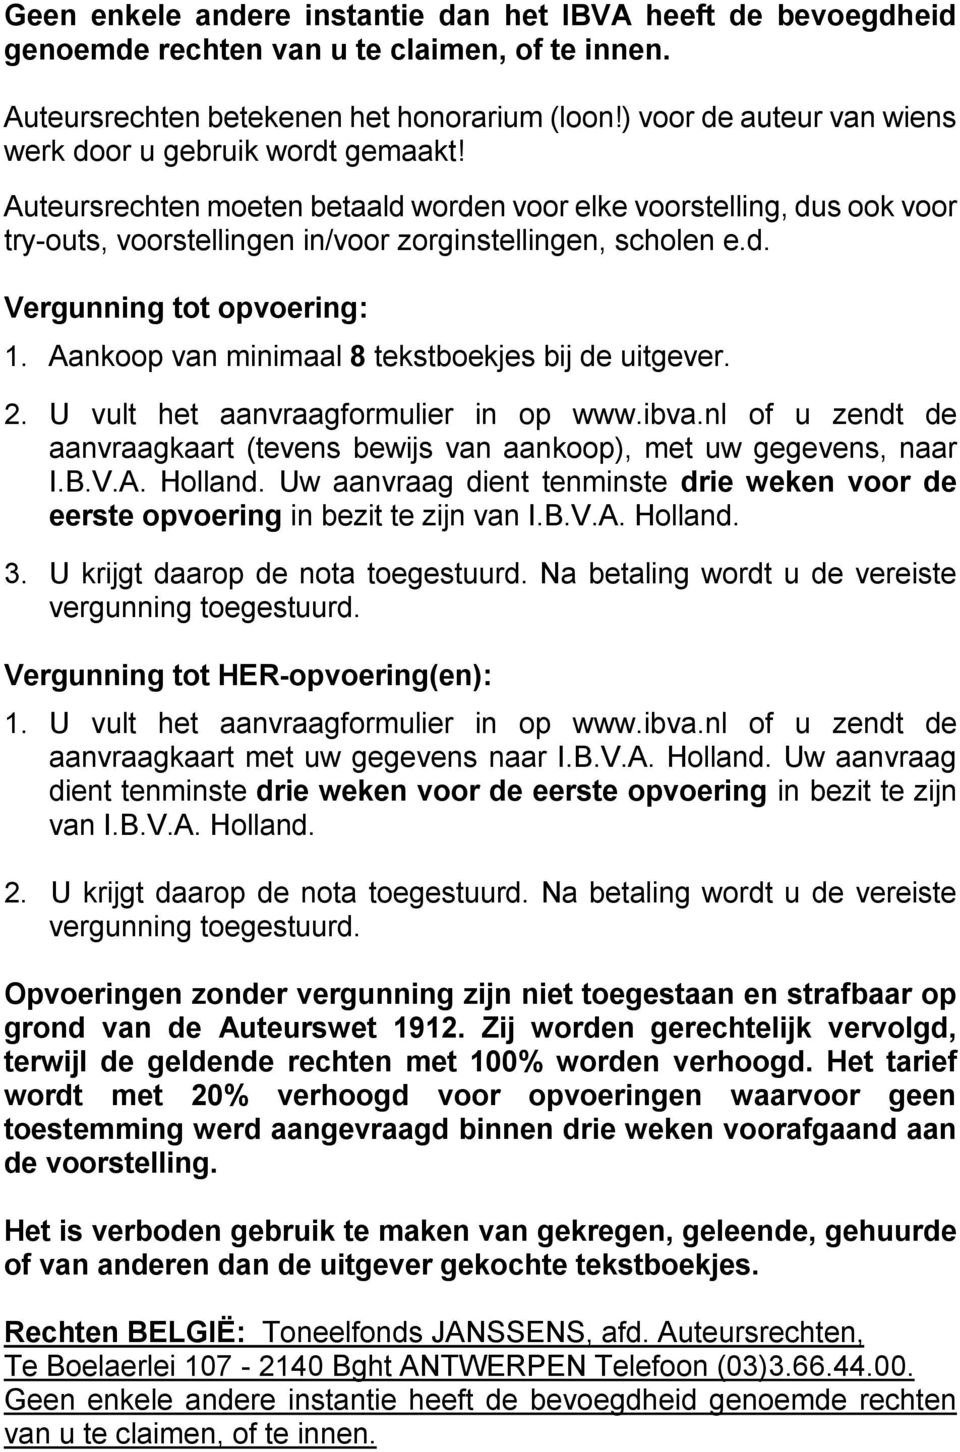 Aankoop van minimaal 8 tekstboekjes bij de uitgever. 2. U vult het aanvraagformulier in op www.ibva.nl of u zendt de aanvraagkaart (tevens bewijs van aankoop), met uw gegevens, naar I.B.V.A. Holland.